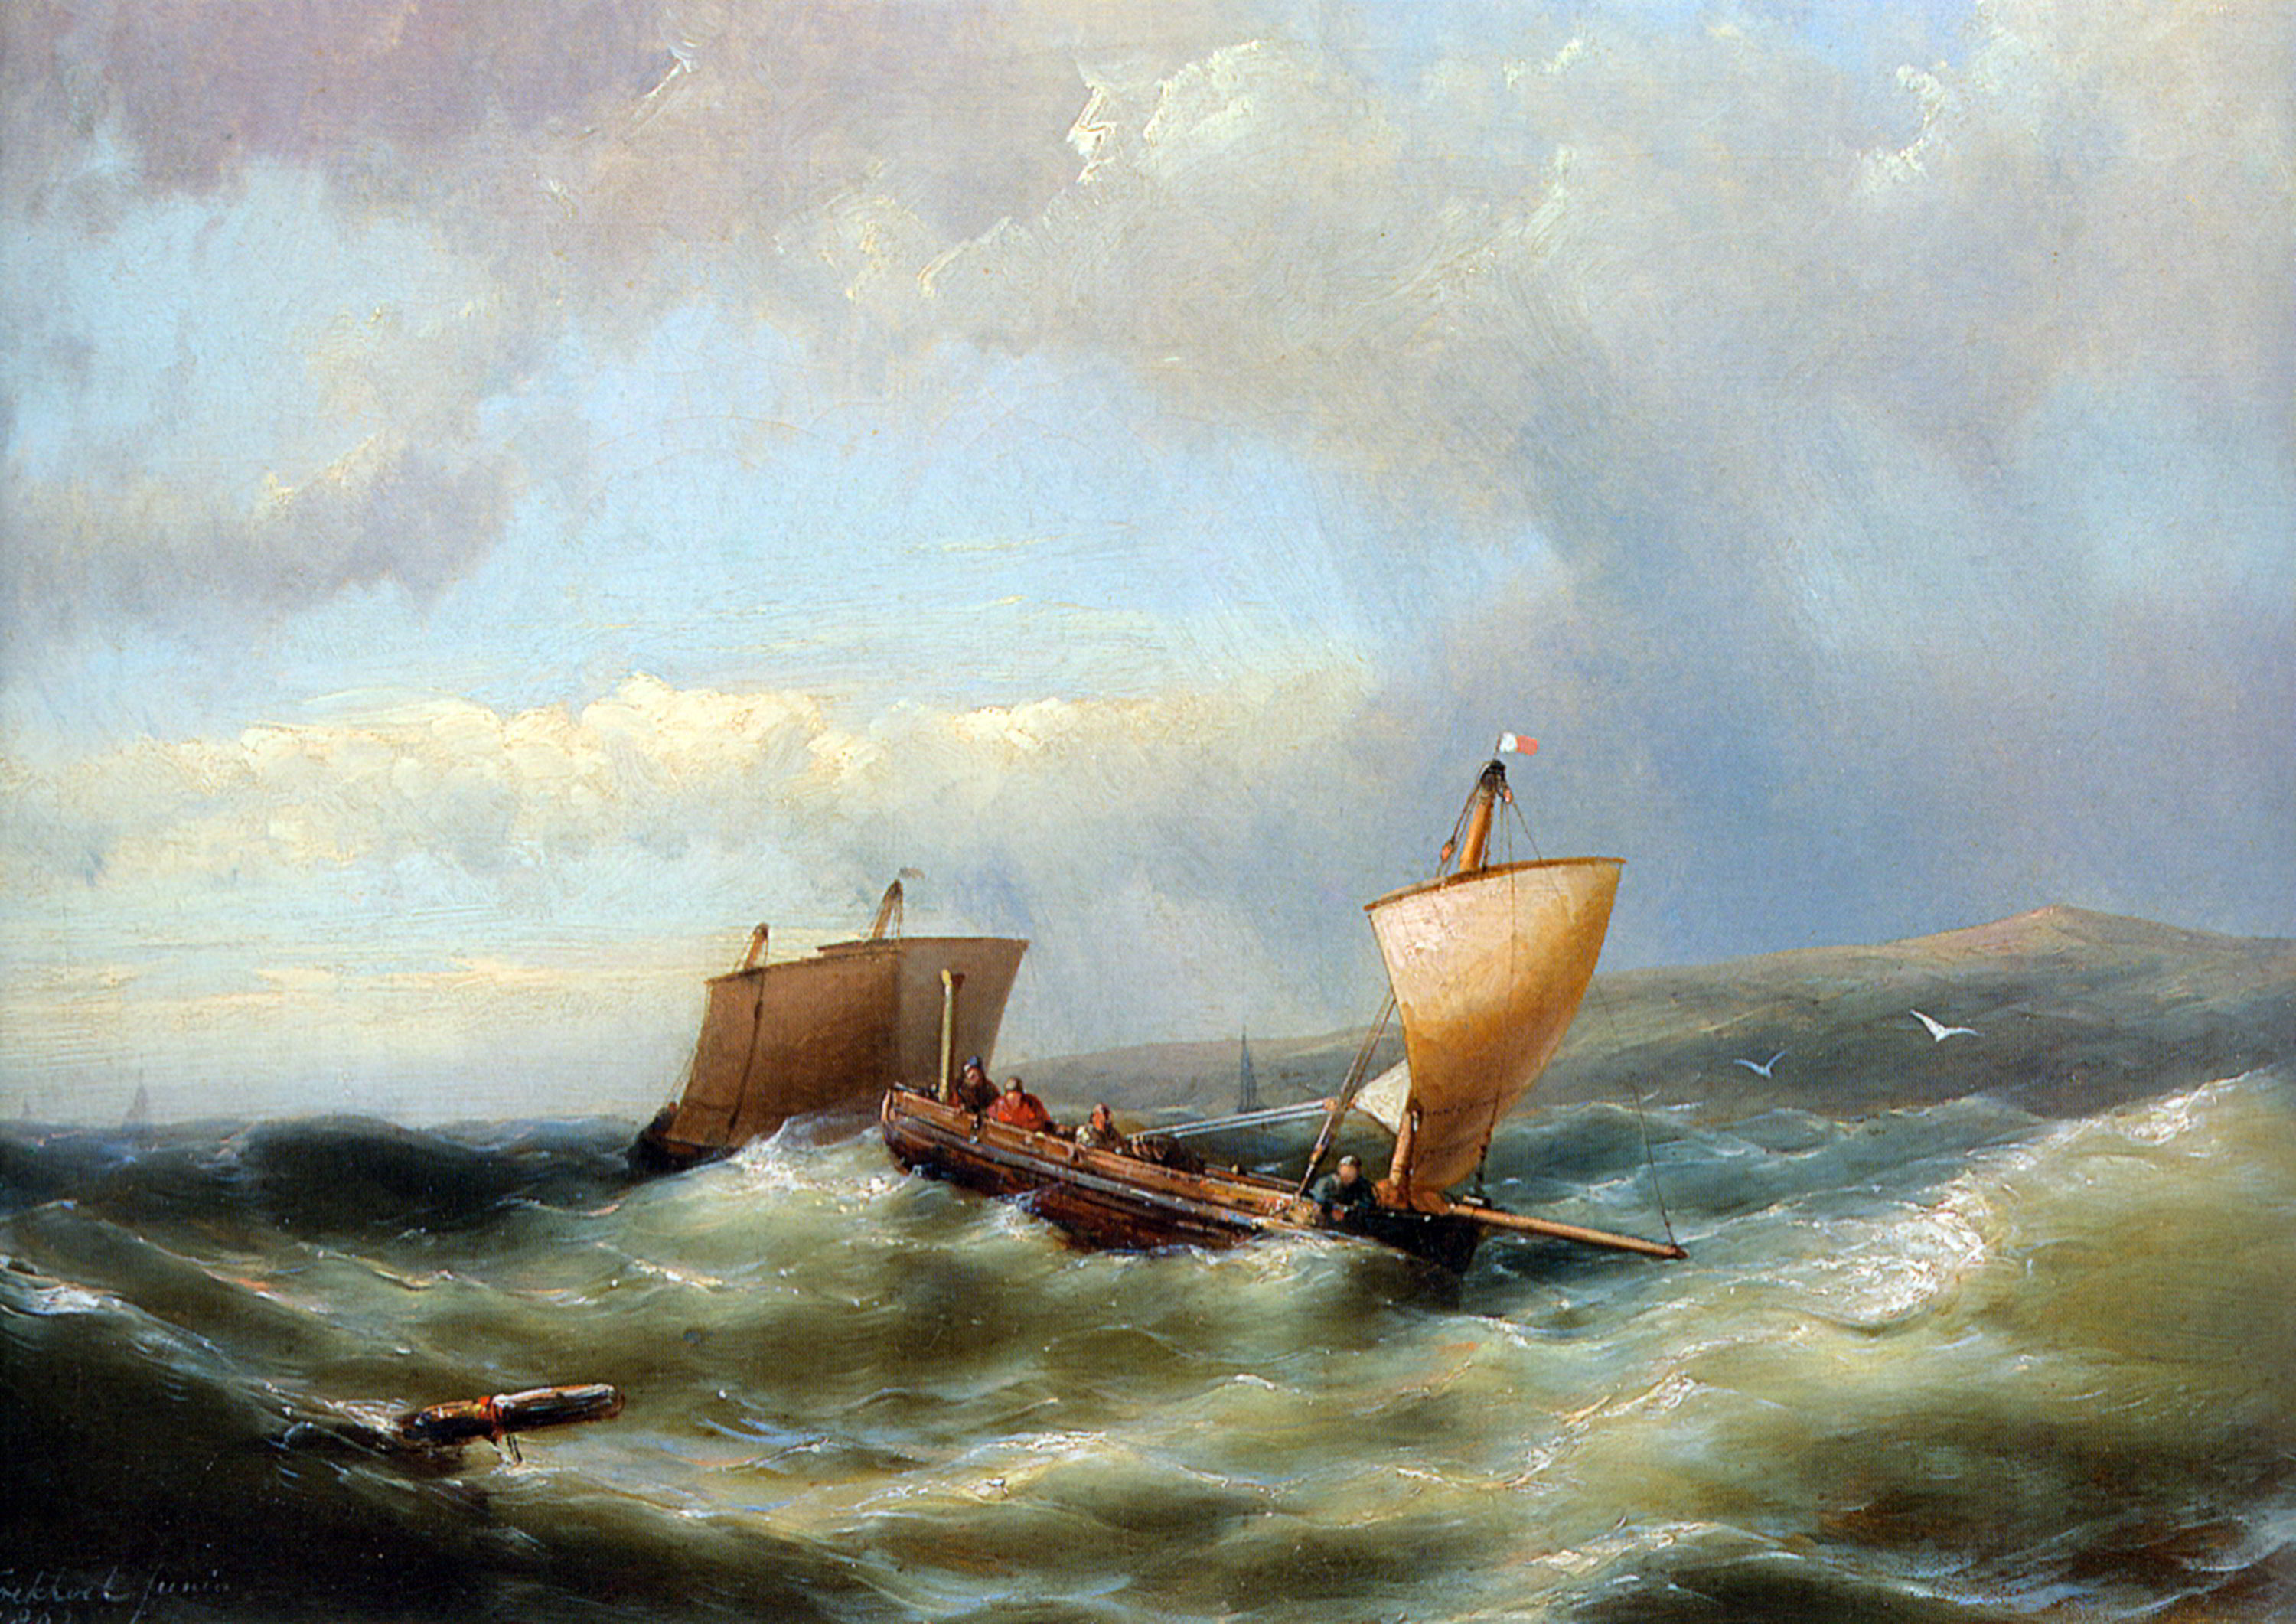 Sailors in a barge on a choppy sea by Hermanus Jr. Koekkoek